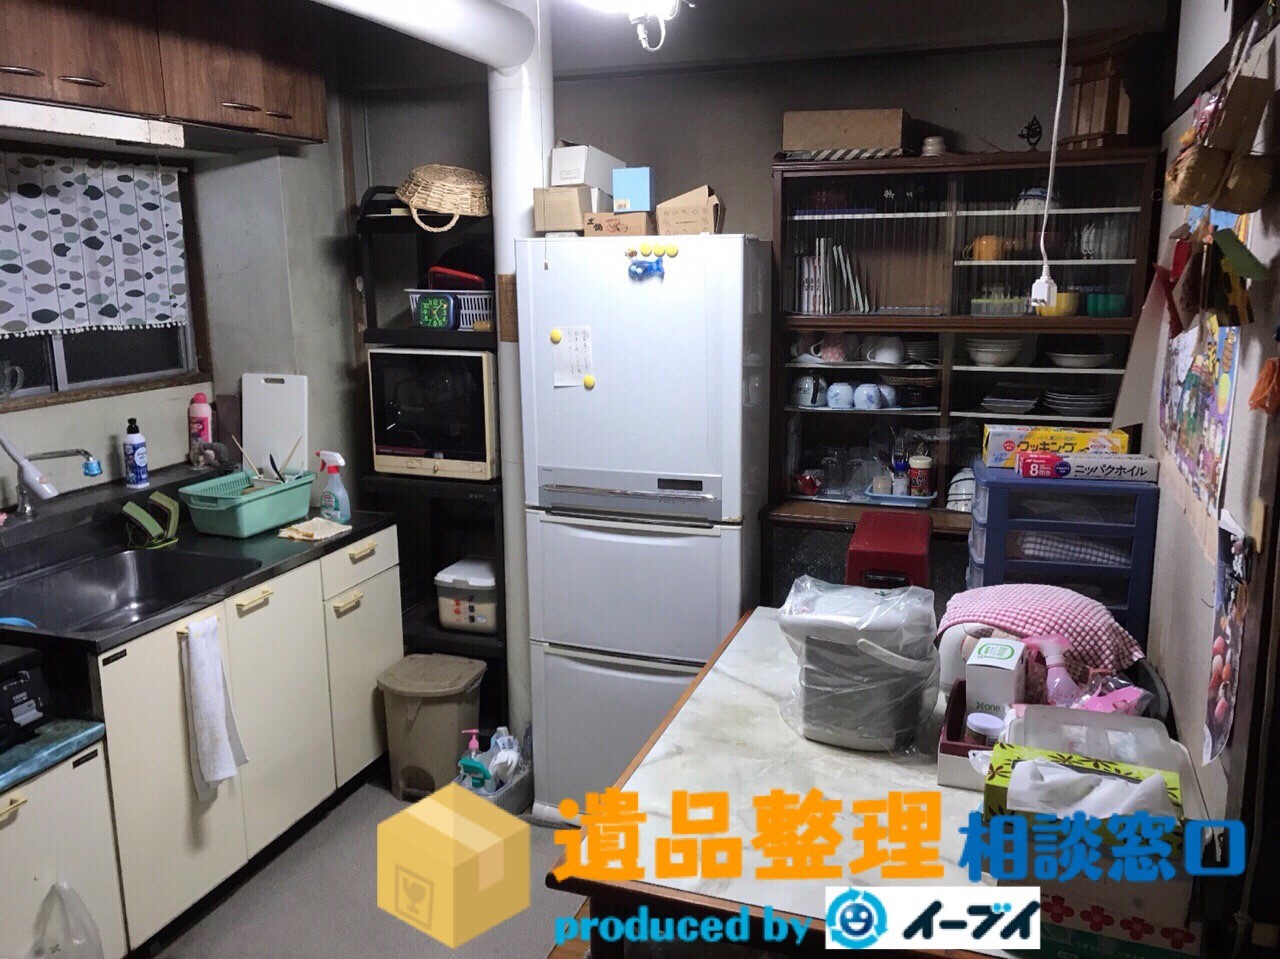 大阪府枚方市で遺品整理作業に伴い日用品や家具処分を片付けました。のアイキャッチ